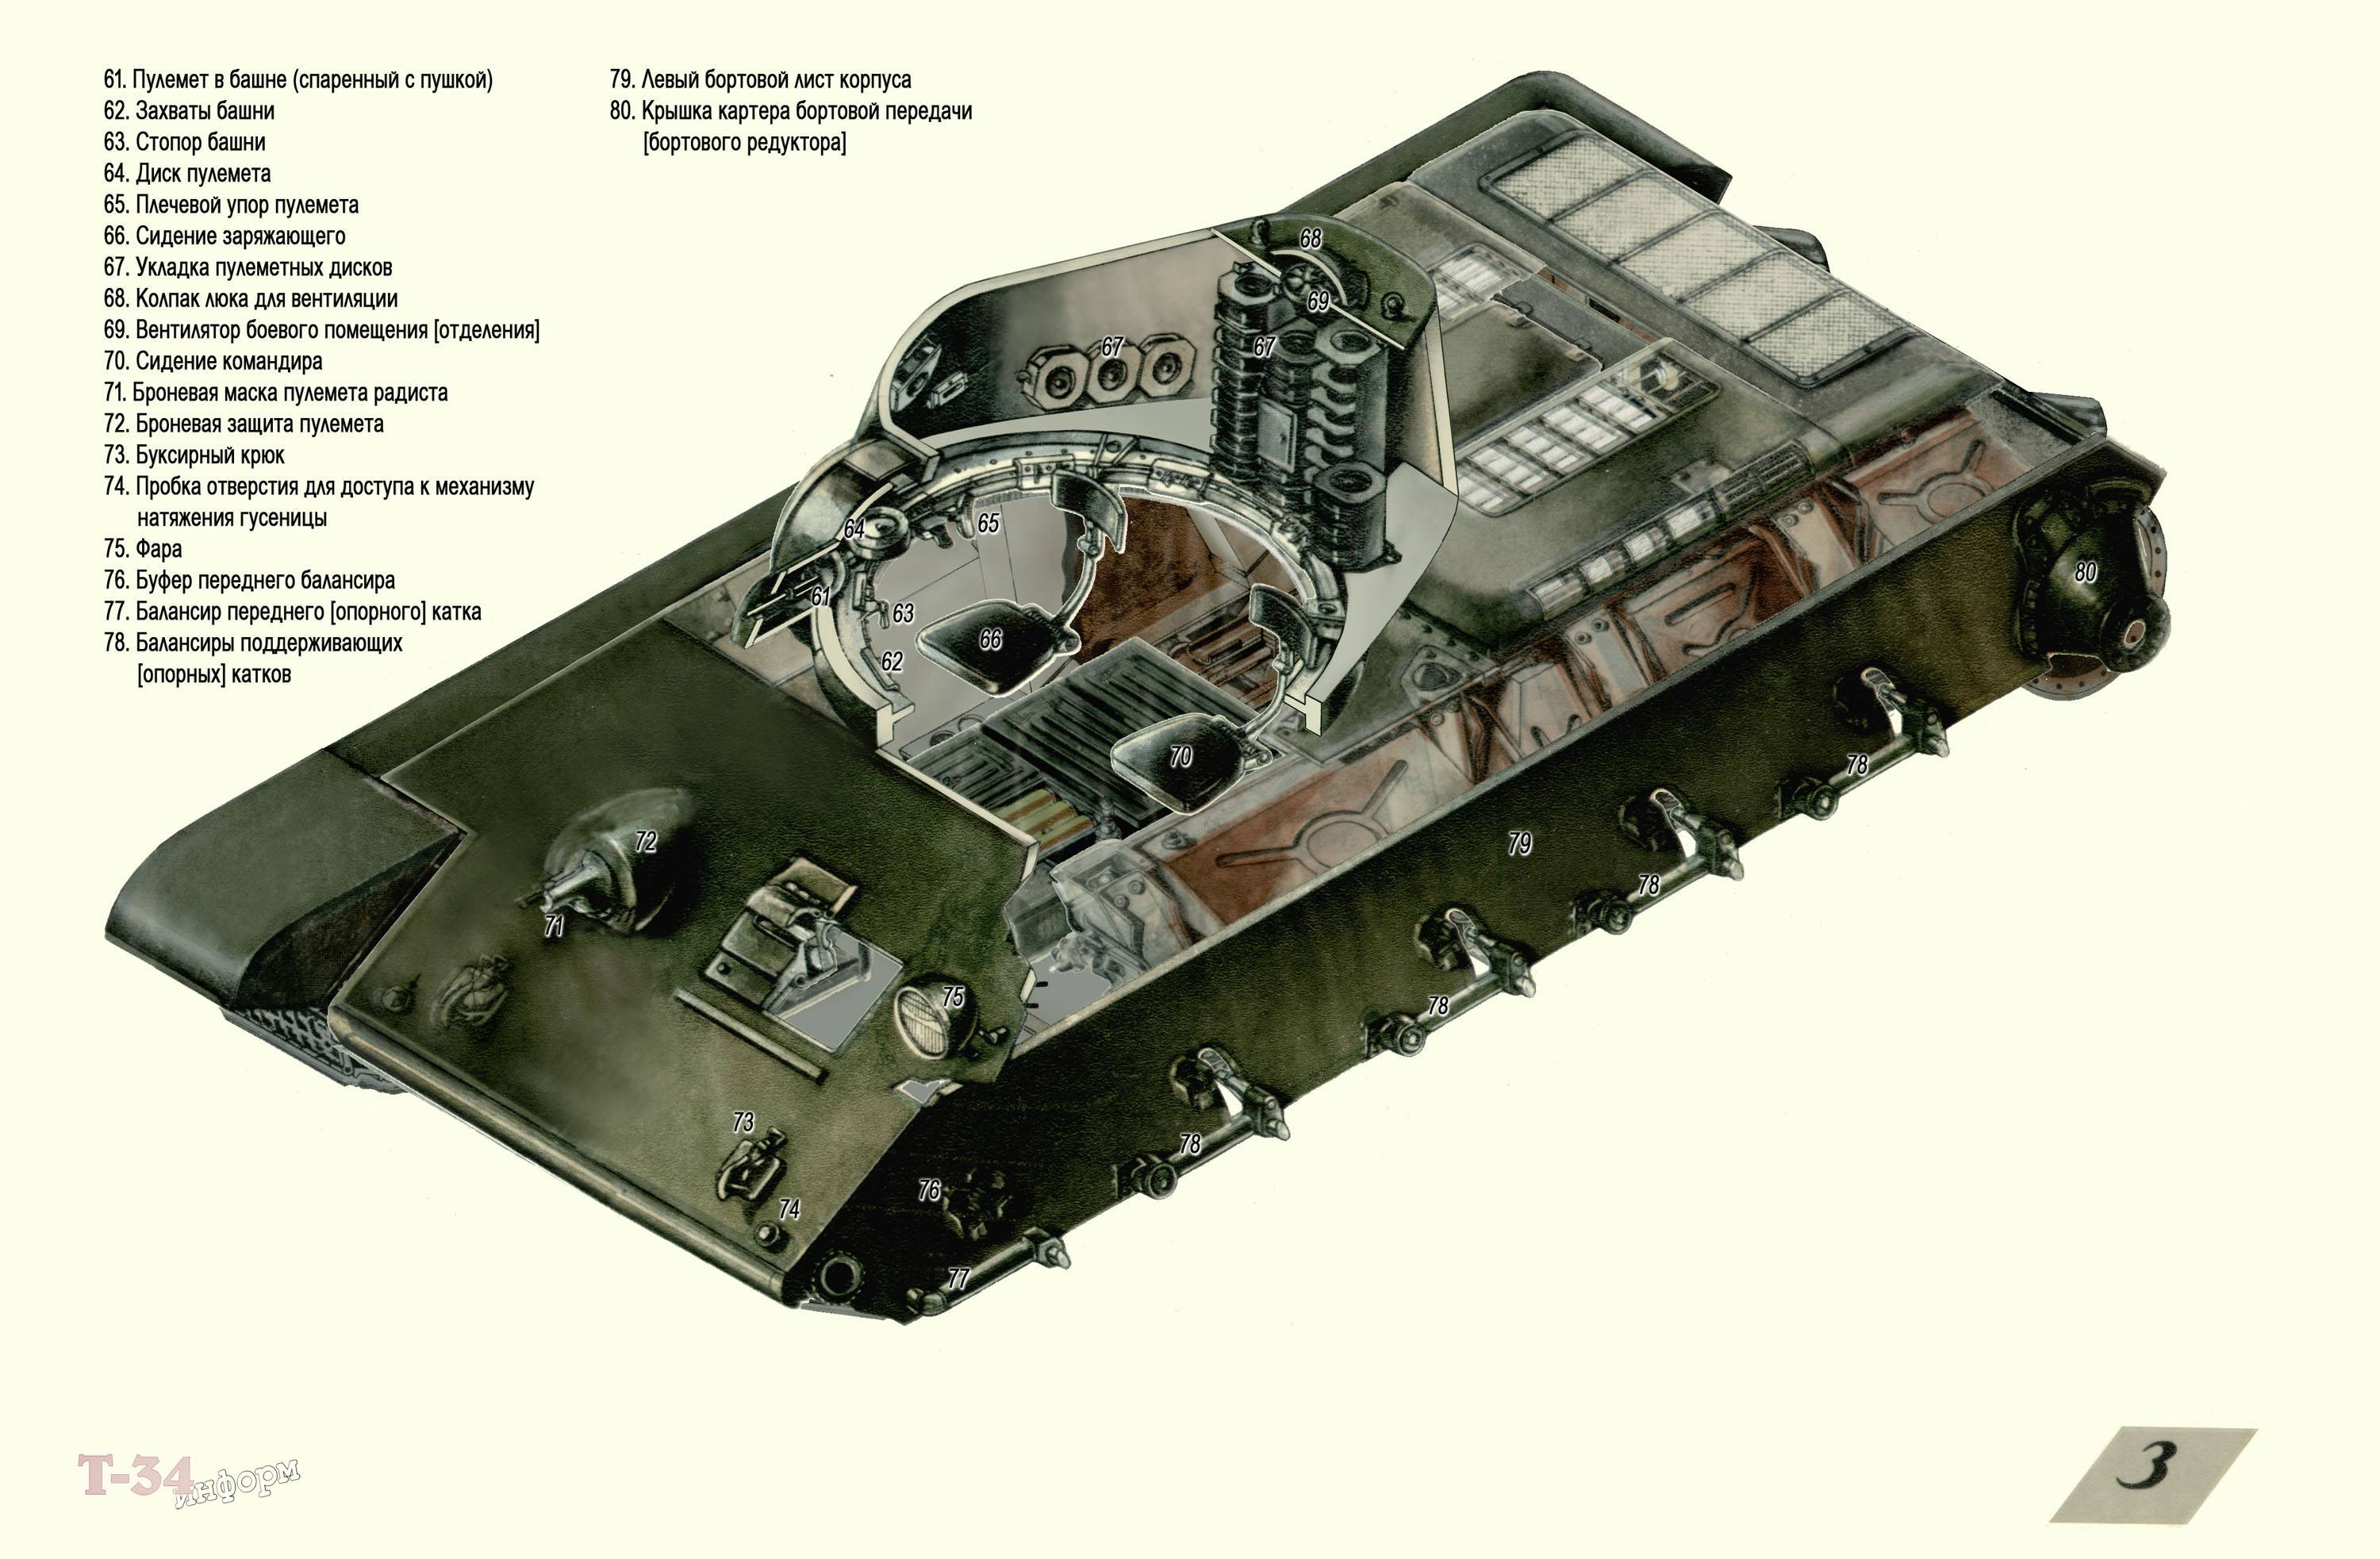 Танк т-34 76 — легендарное оружие второй мировой войны